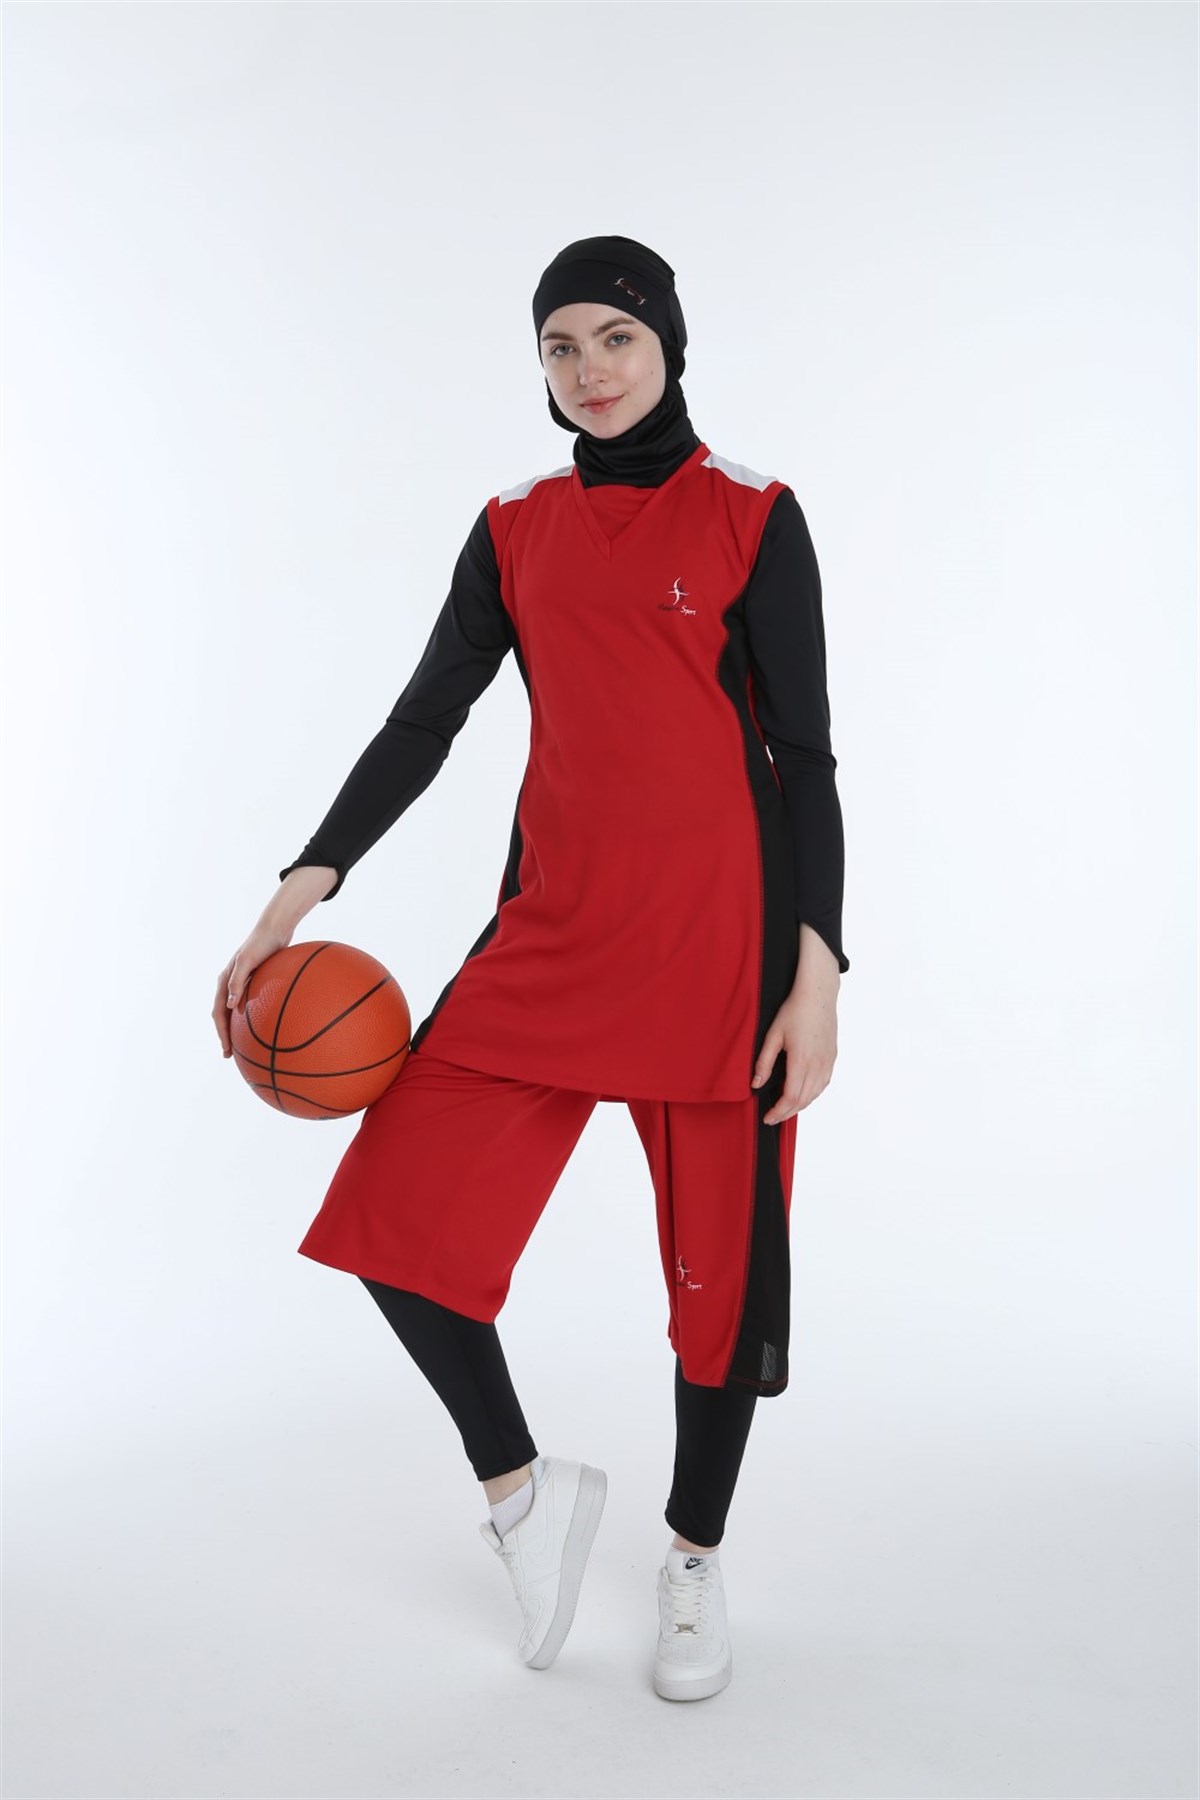 Haşema Sports Kırmızı Tesettür Kadın Basketbol Forma Takımı - Haşema